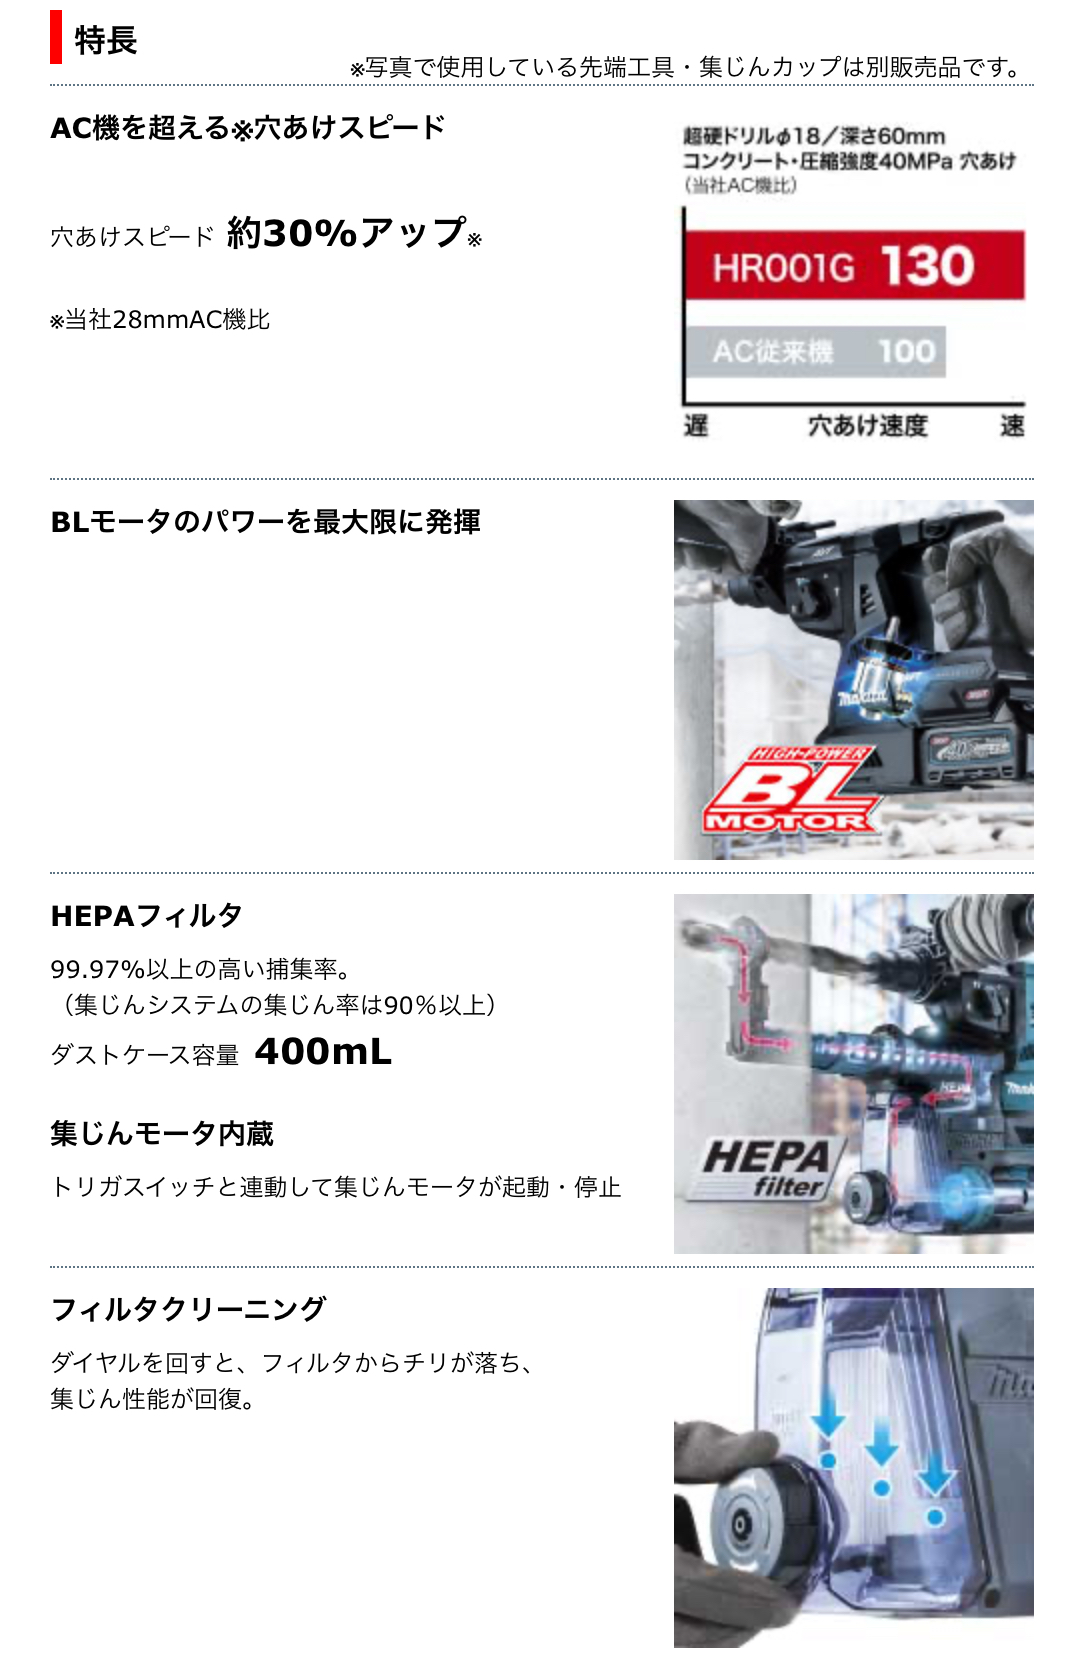 マキタ 28mm 充電式ハンマドリル HR001GRDXV | 相模原や町田で作業服 ...